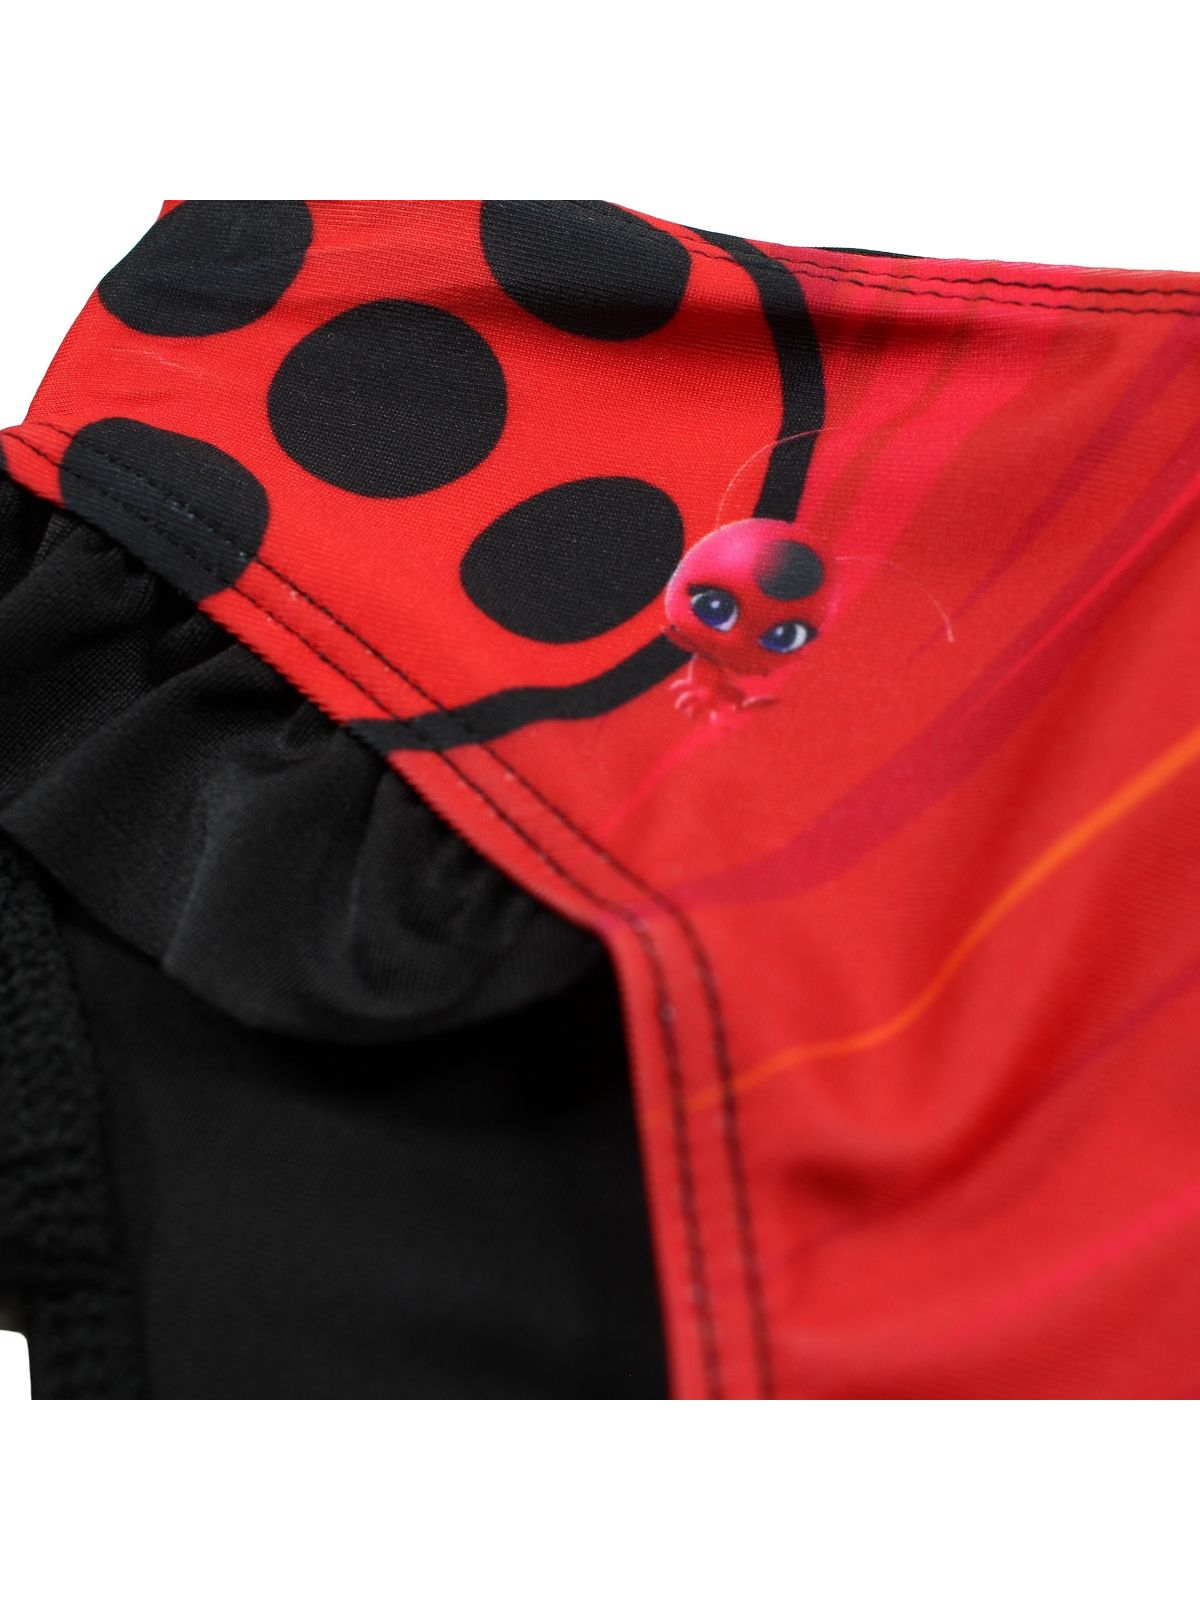 Ladybug swimsuit.